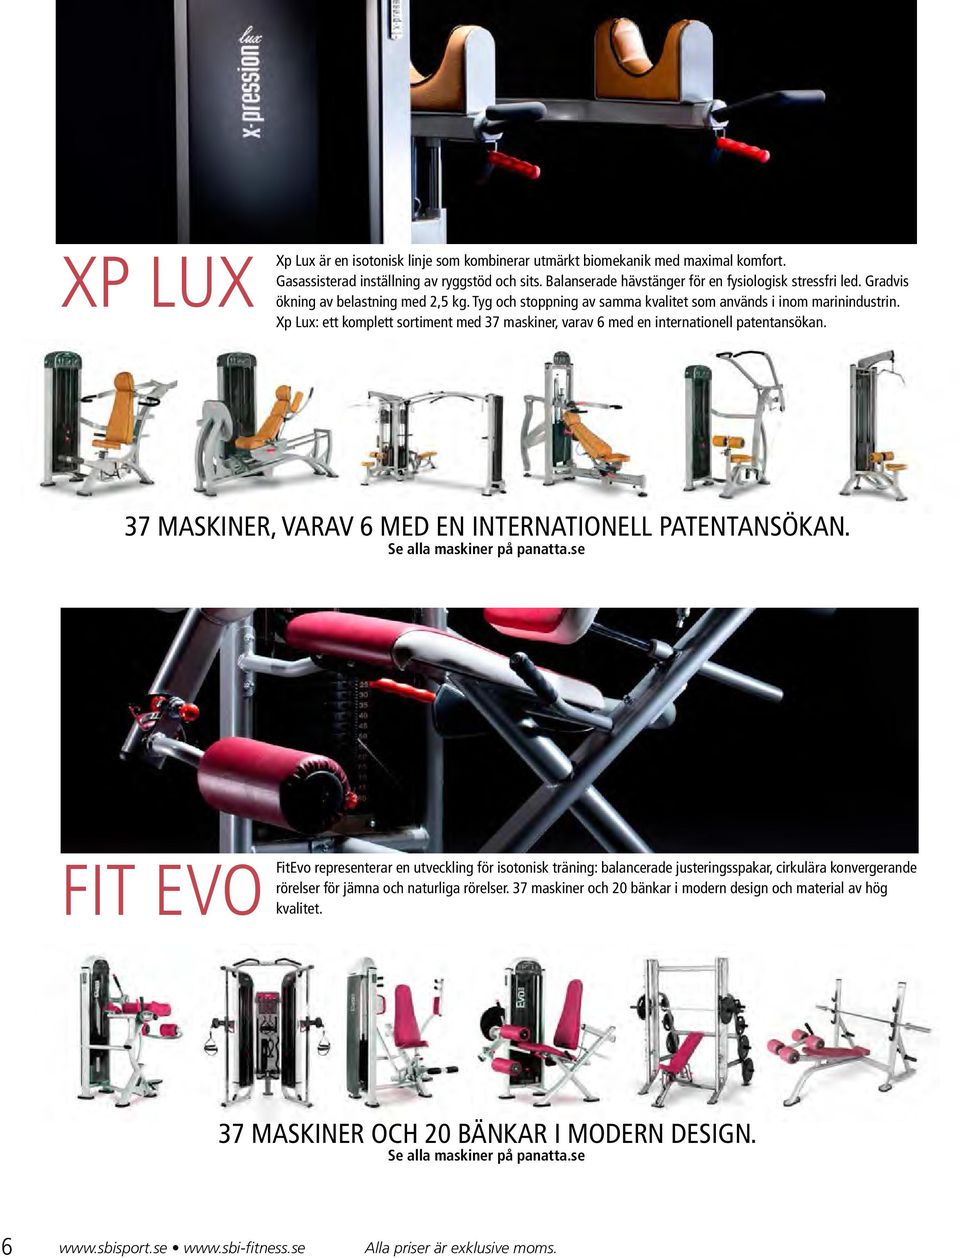 Xp Lux: ett komplett sortiment med 37 maskiner, varav 6 med en internationell patentansökan. 37 MASKINER, VARAV 6 MED EN INTERNATIONELL PATENTANSÖKAN. Se alla maskiner på panatta.